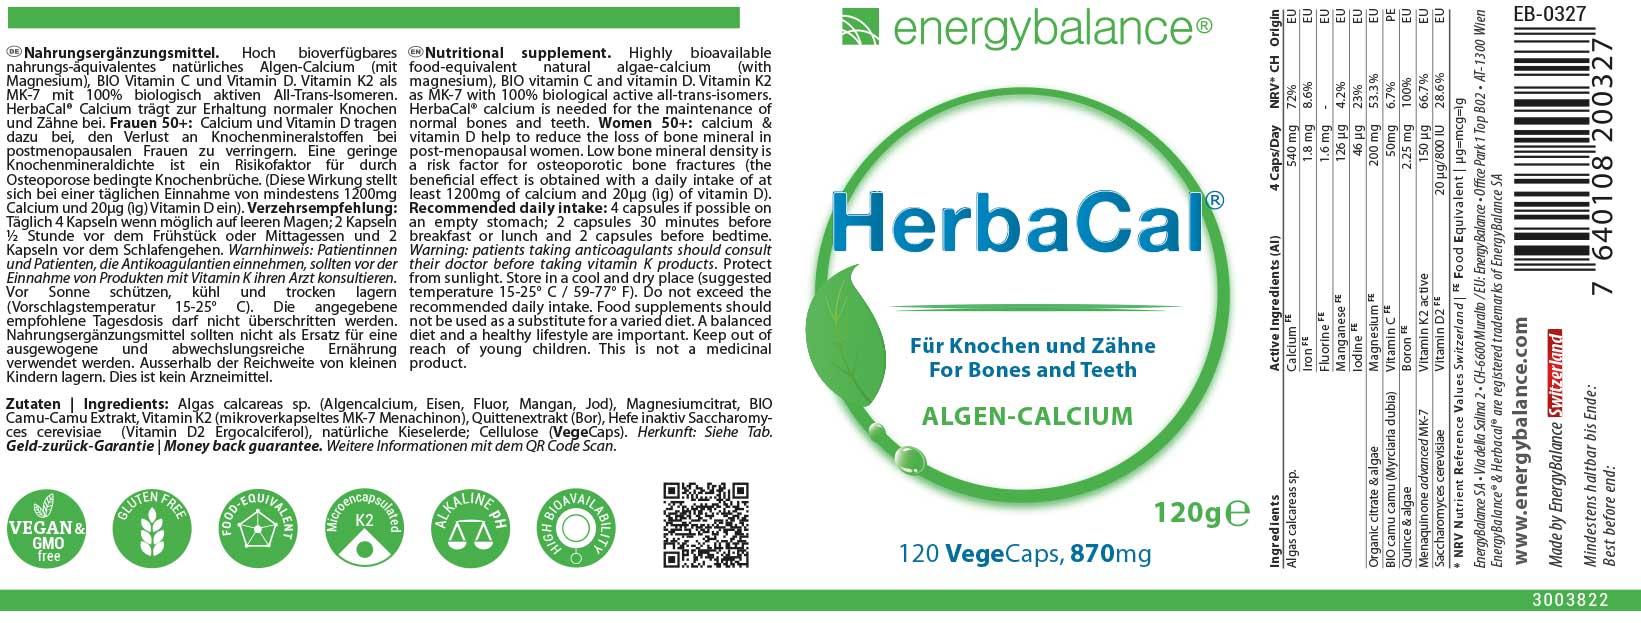 HerbaCal Etikett von Energybalance